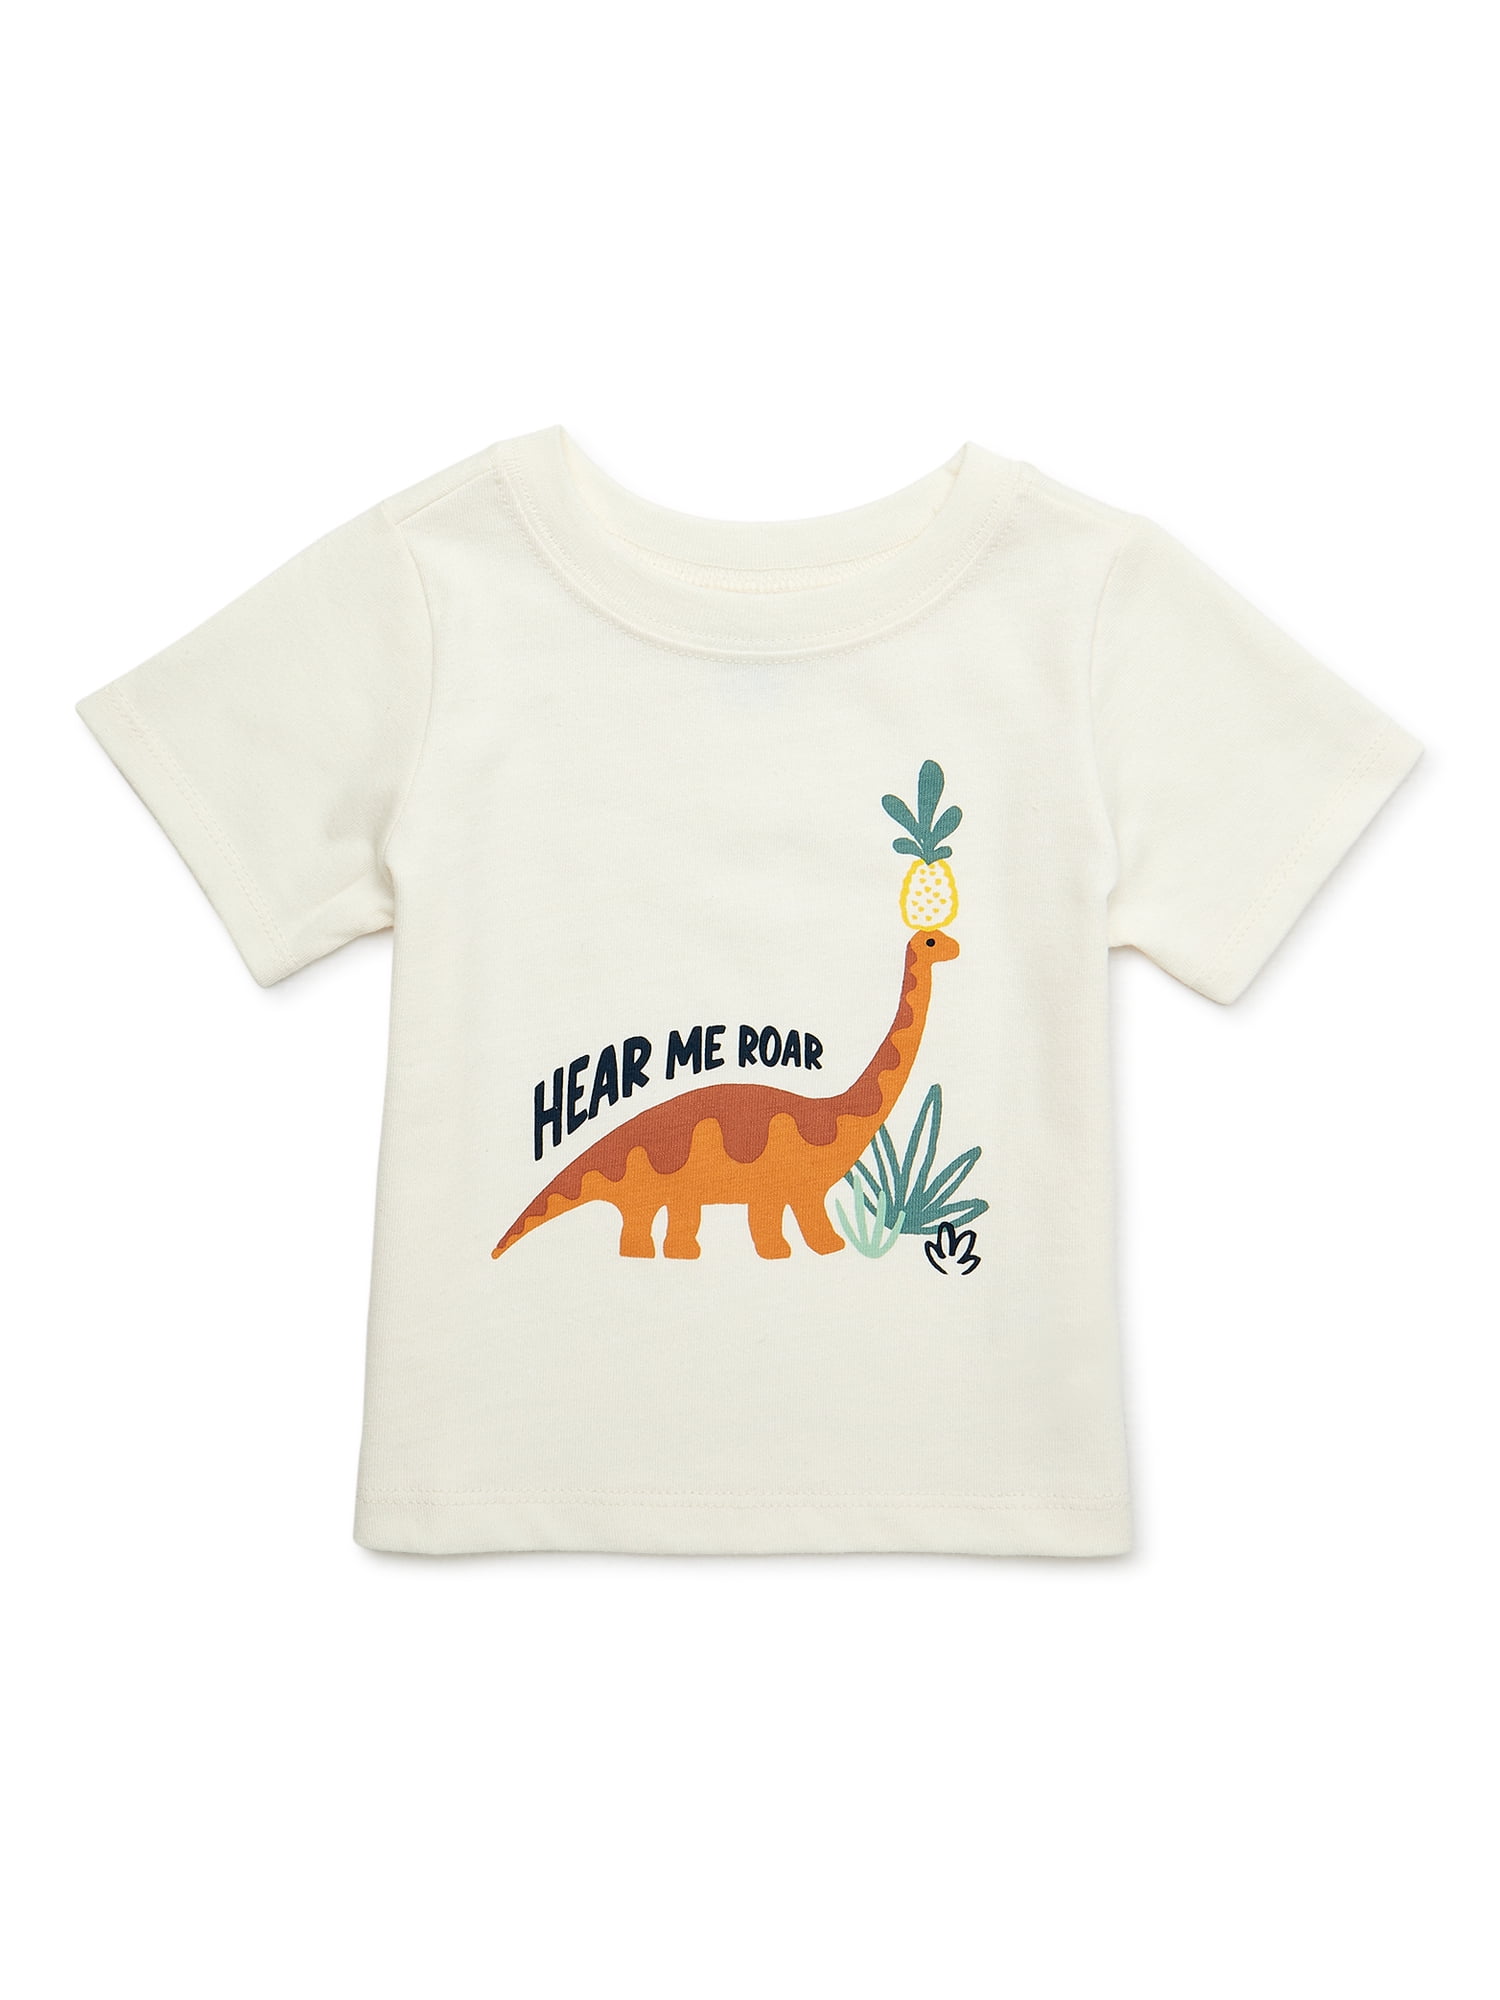 Garanimals Baby Boy Short Sleeve Graphic T-Shirt, Sizes 0-24 Months